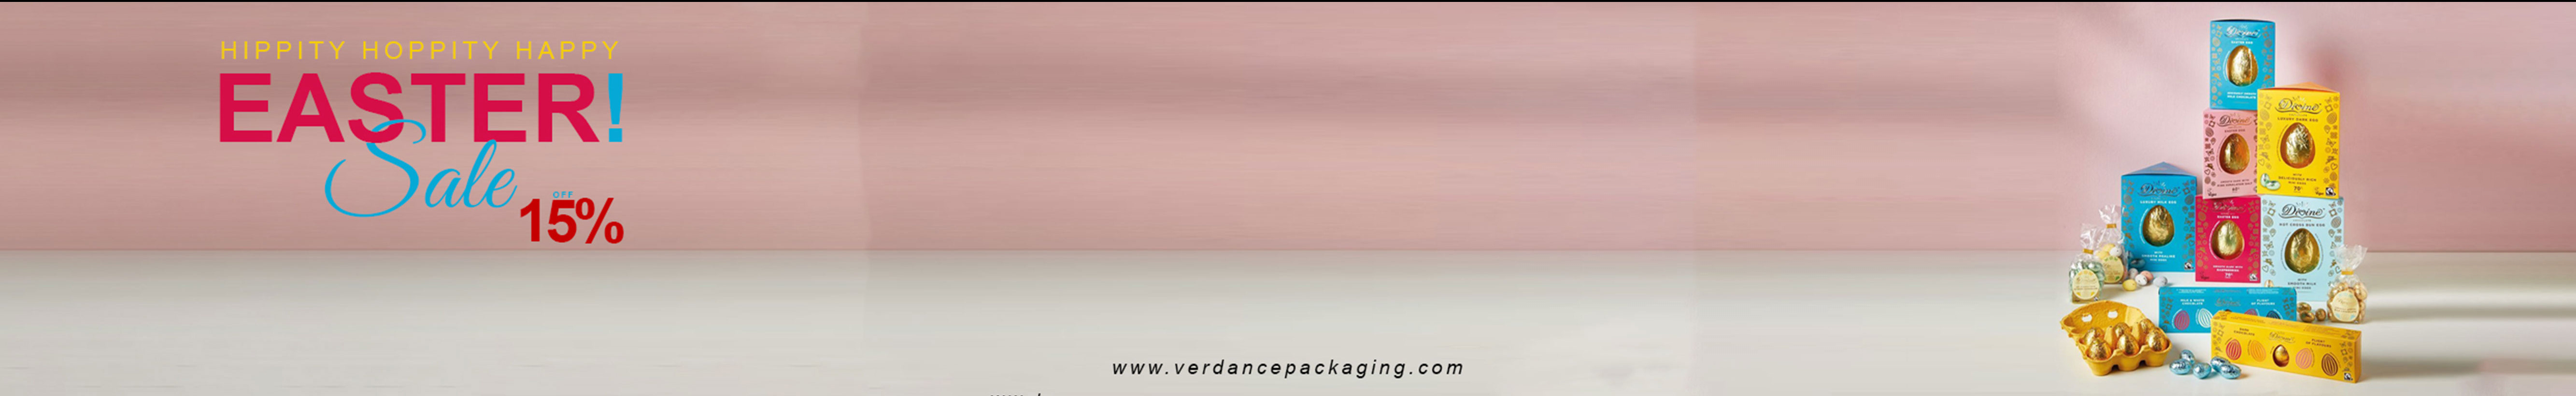 Verdance Packagings profilbanner